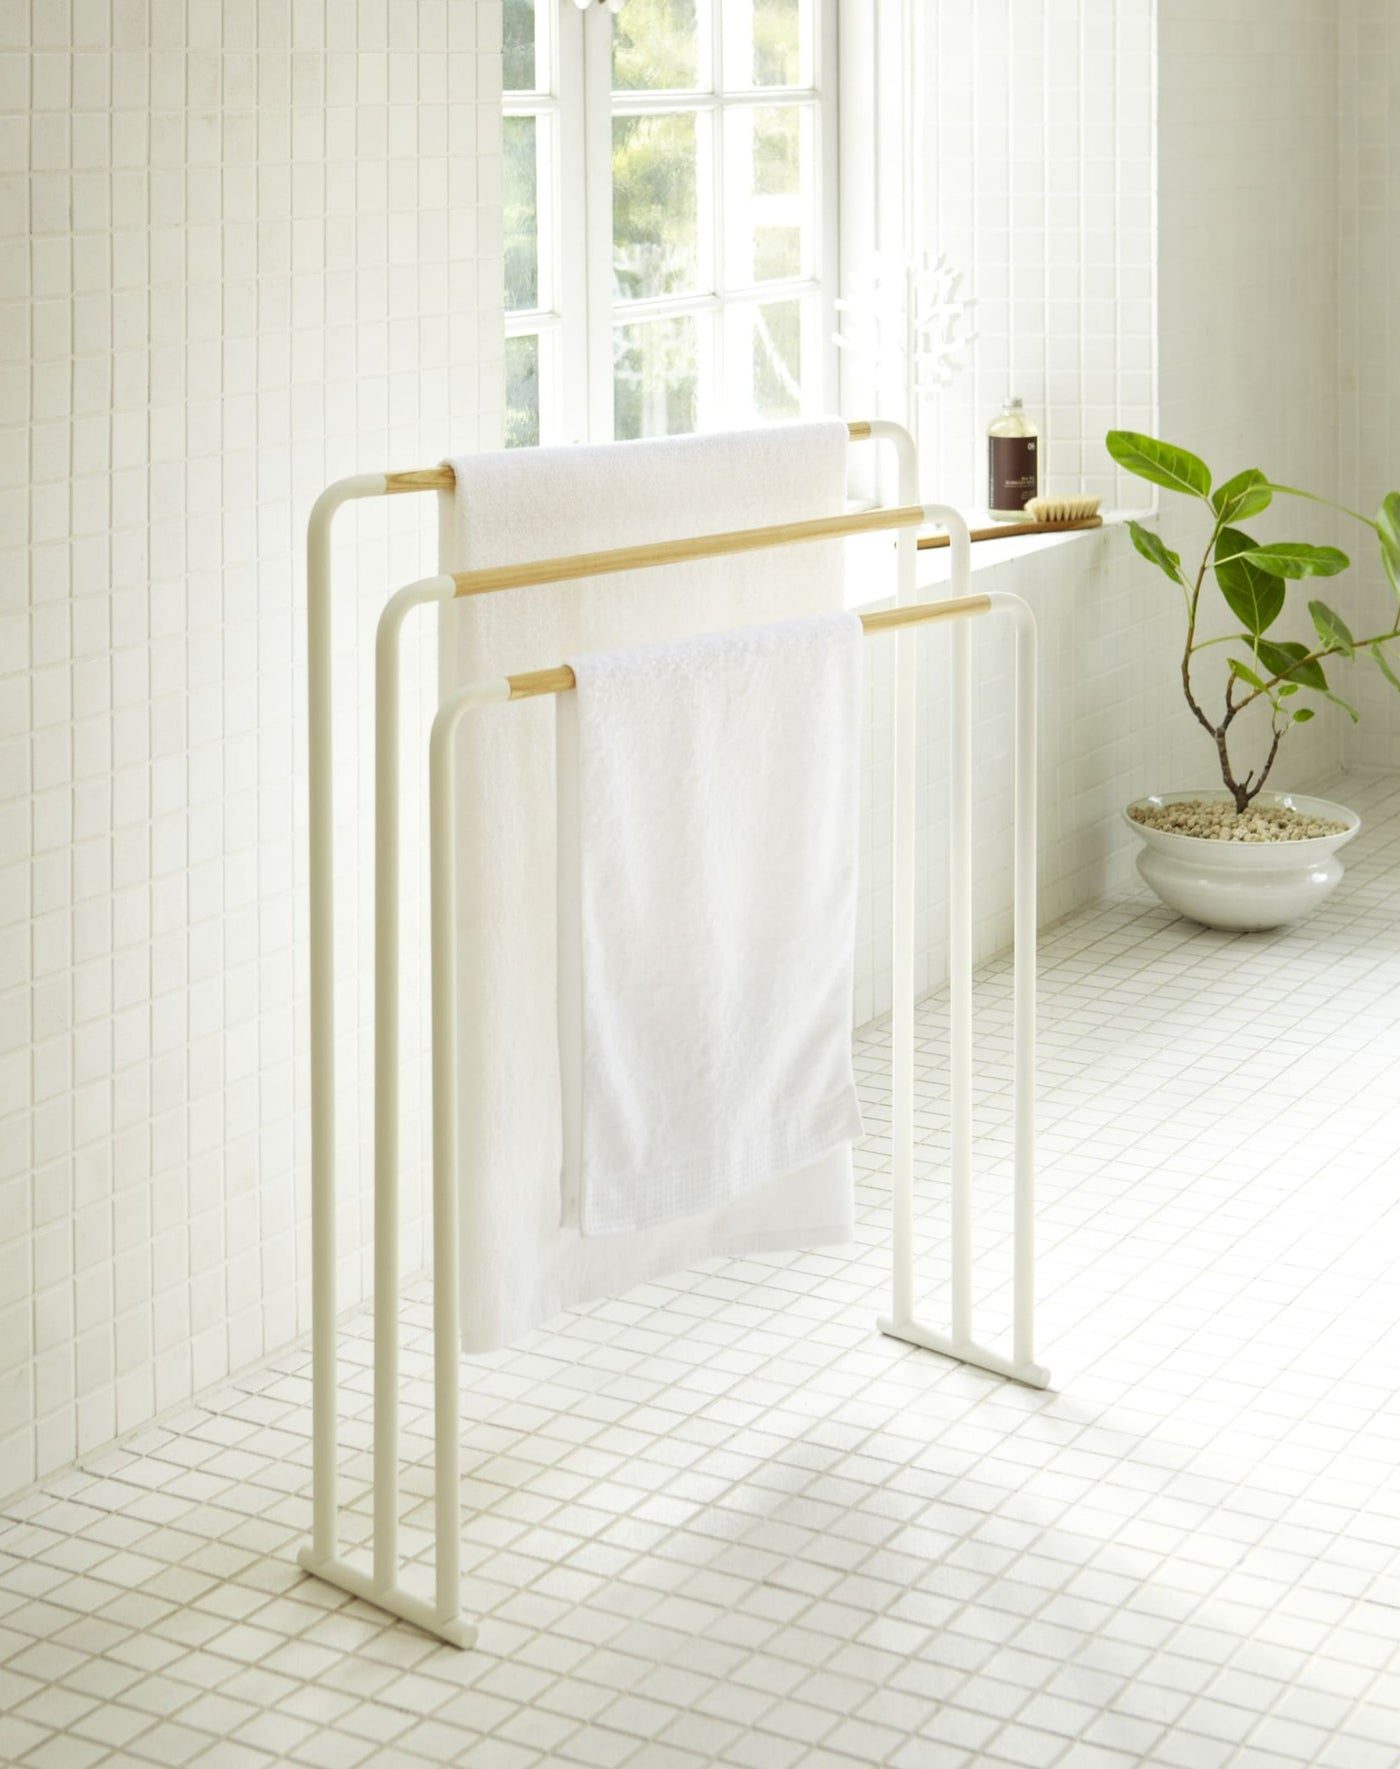 Yamazaki Tosca Bath Towel Rack